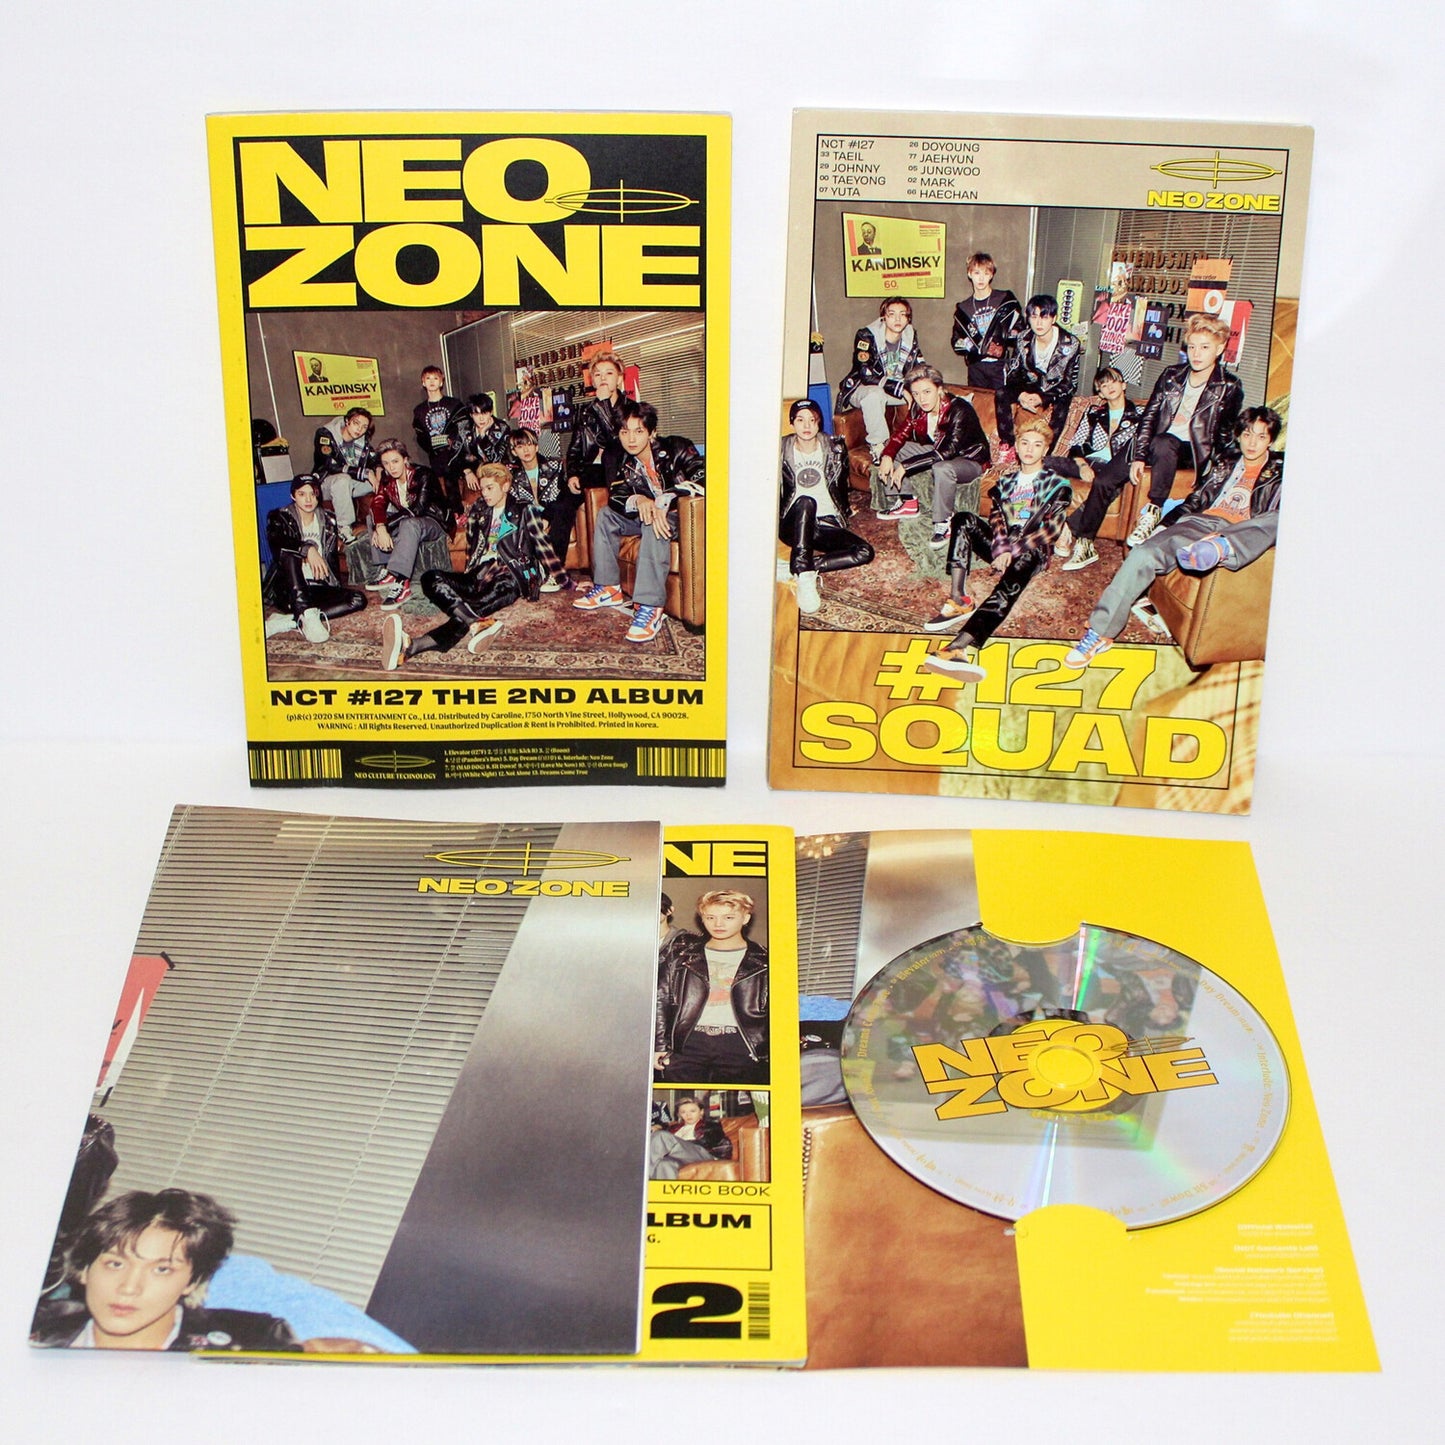 NCT 127 2do álbum: ZONA NEO | Versión N.